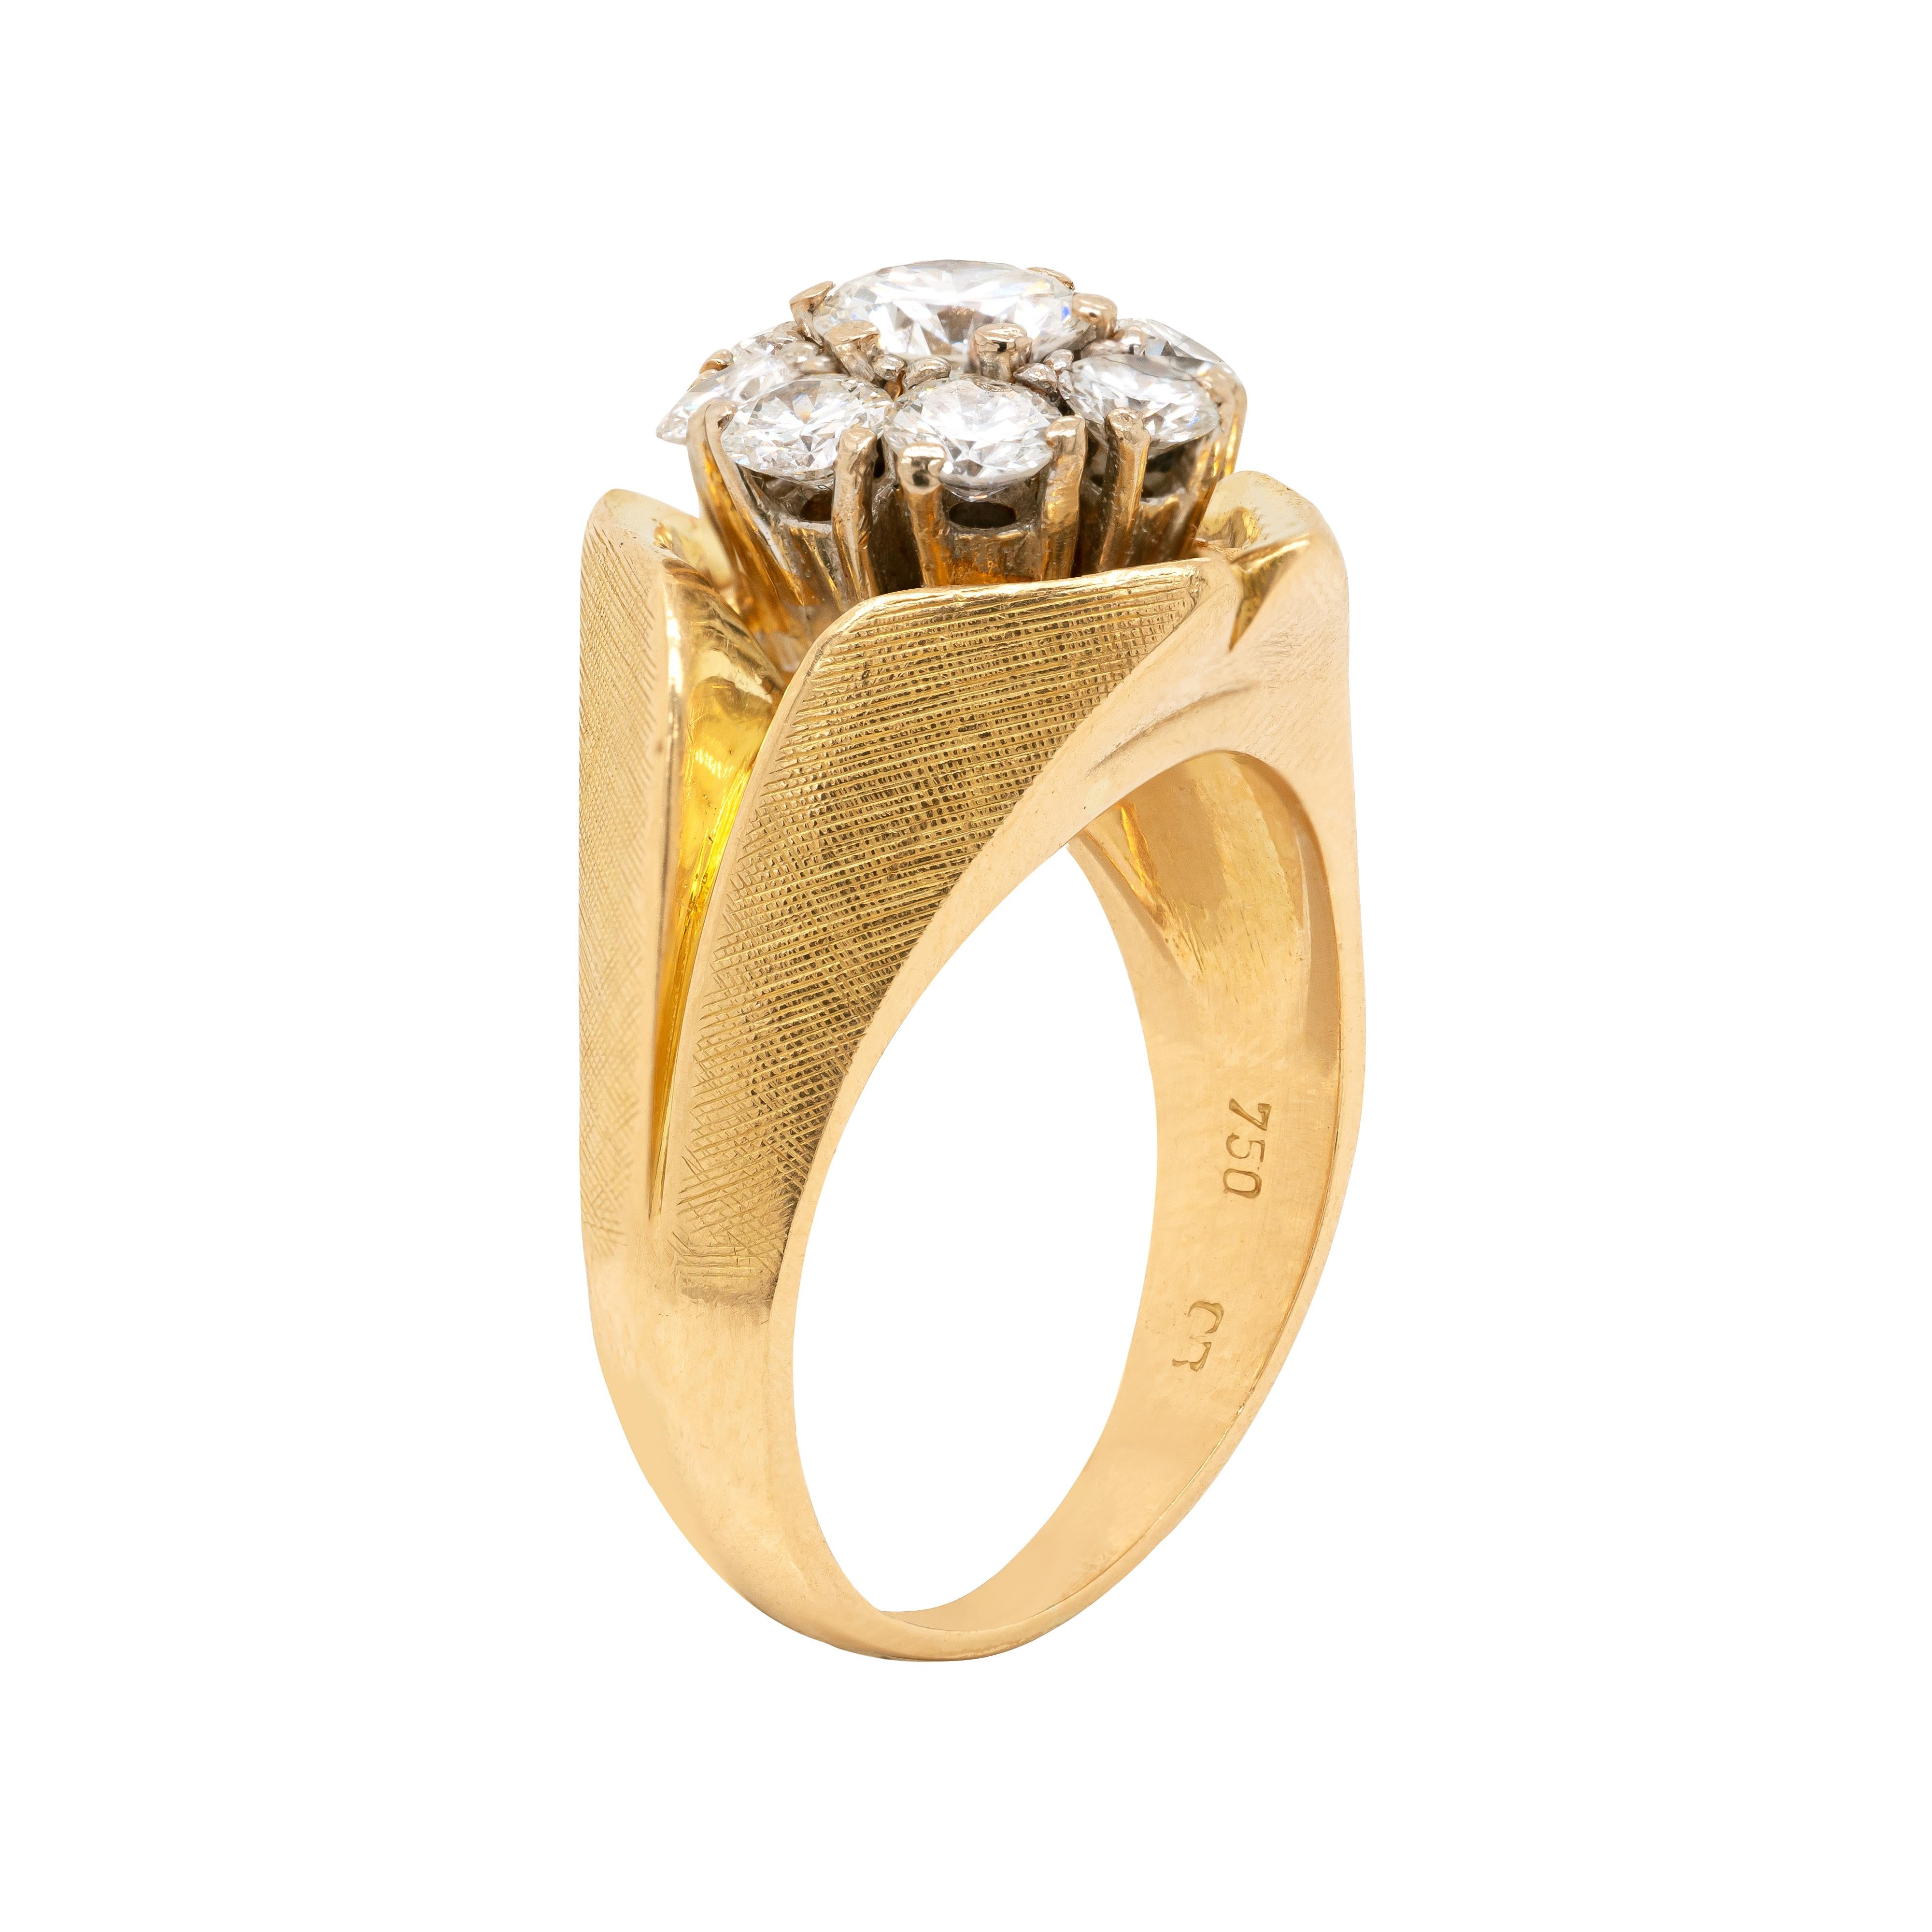 Cette bague inhabituelle en or jaune 18 carats présente une magnifique grappe au centre composée de 9 diamants ronds de taille brillant, d'un poids total approximatif de 1,40 ct, tous sertis en griffe dans des montures ouvertes. La grappe de